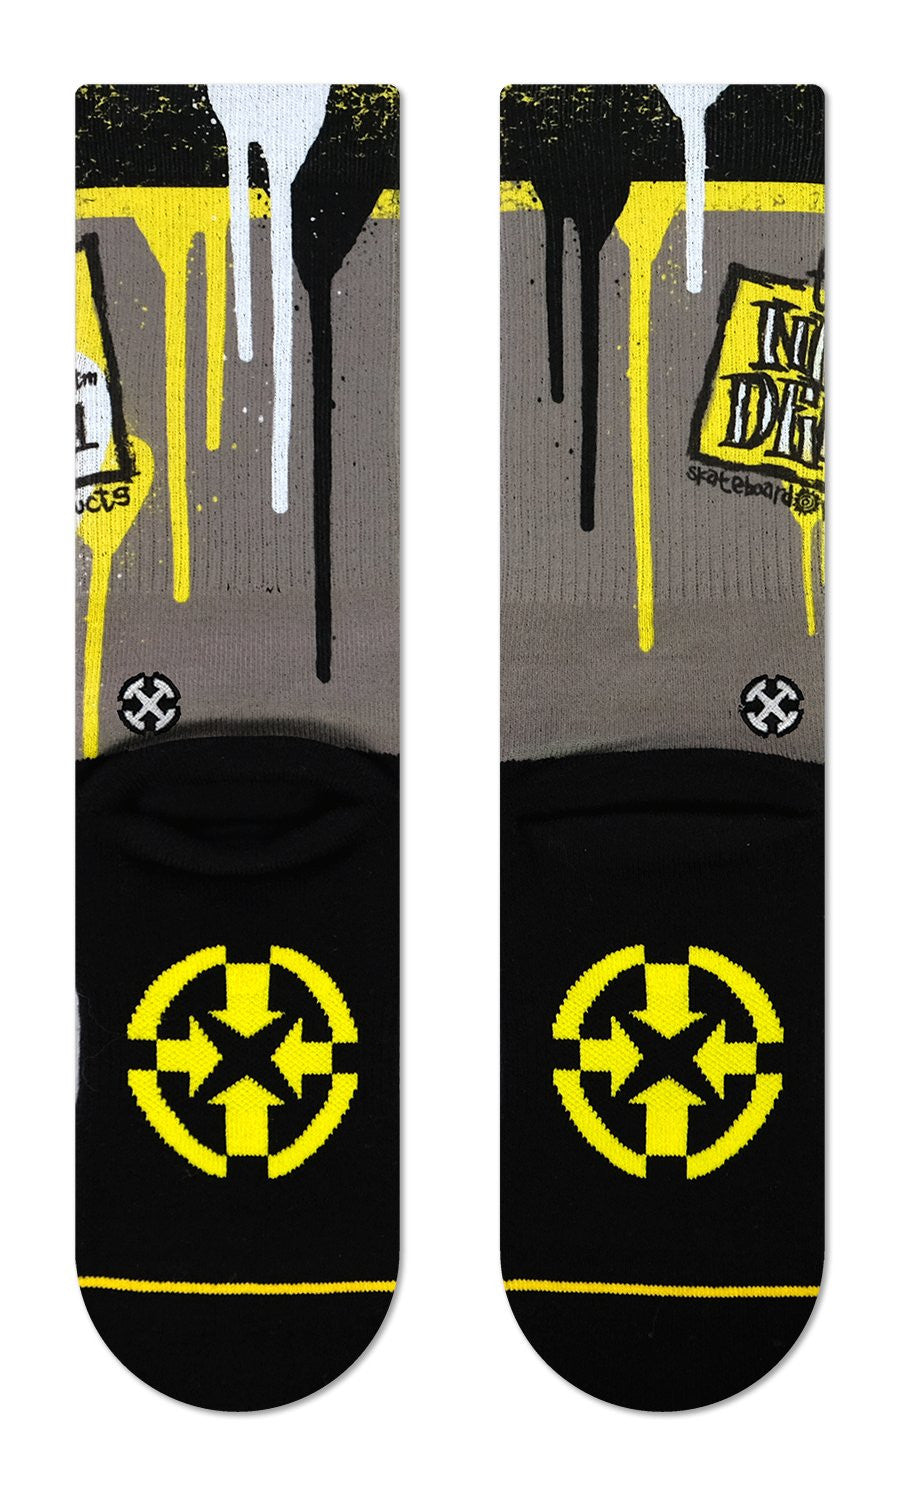 Merge4 Socks - New Deal Napkin Logo   Socks